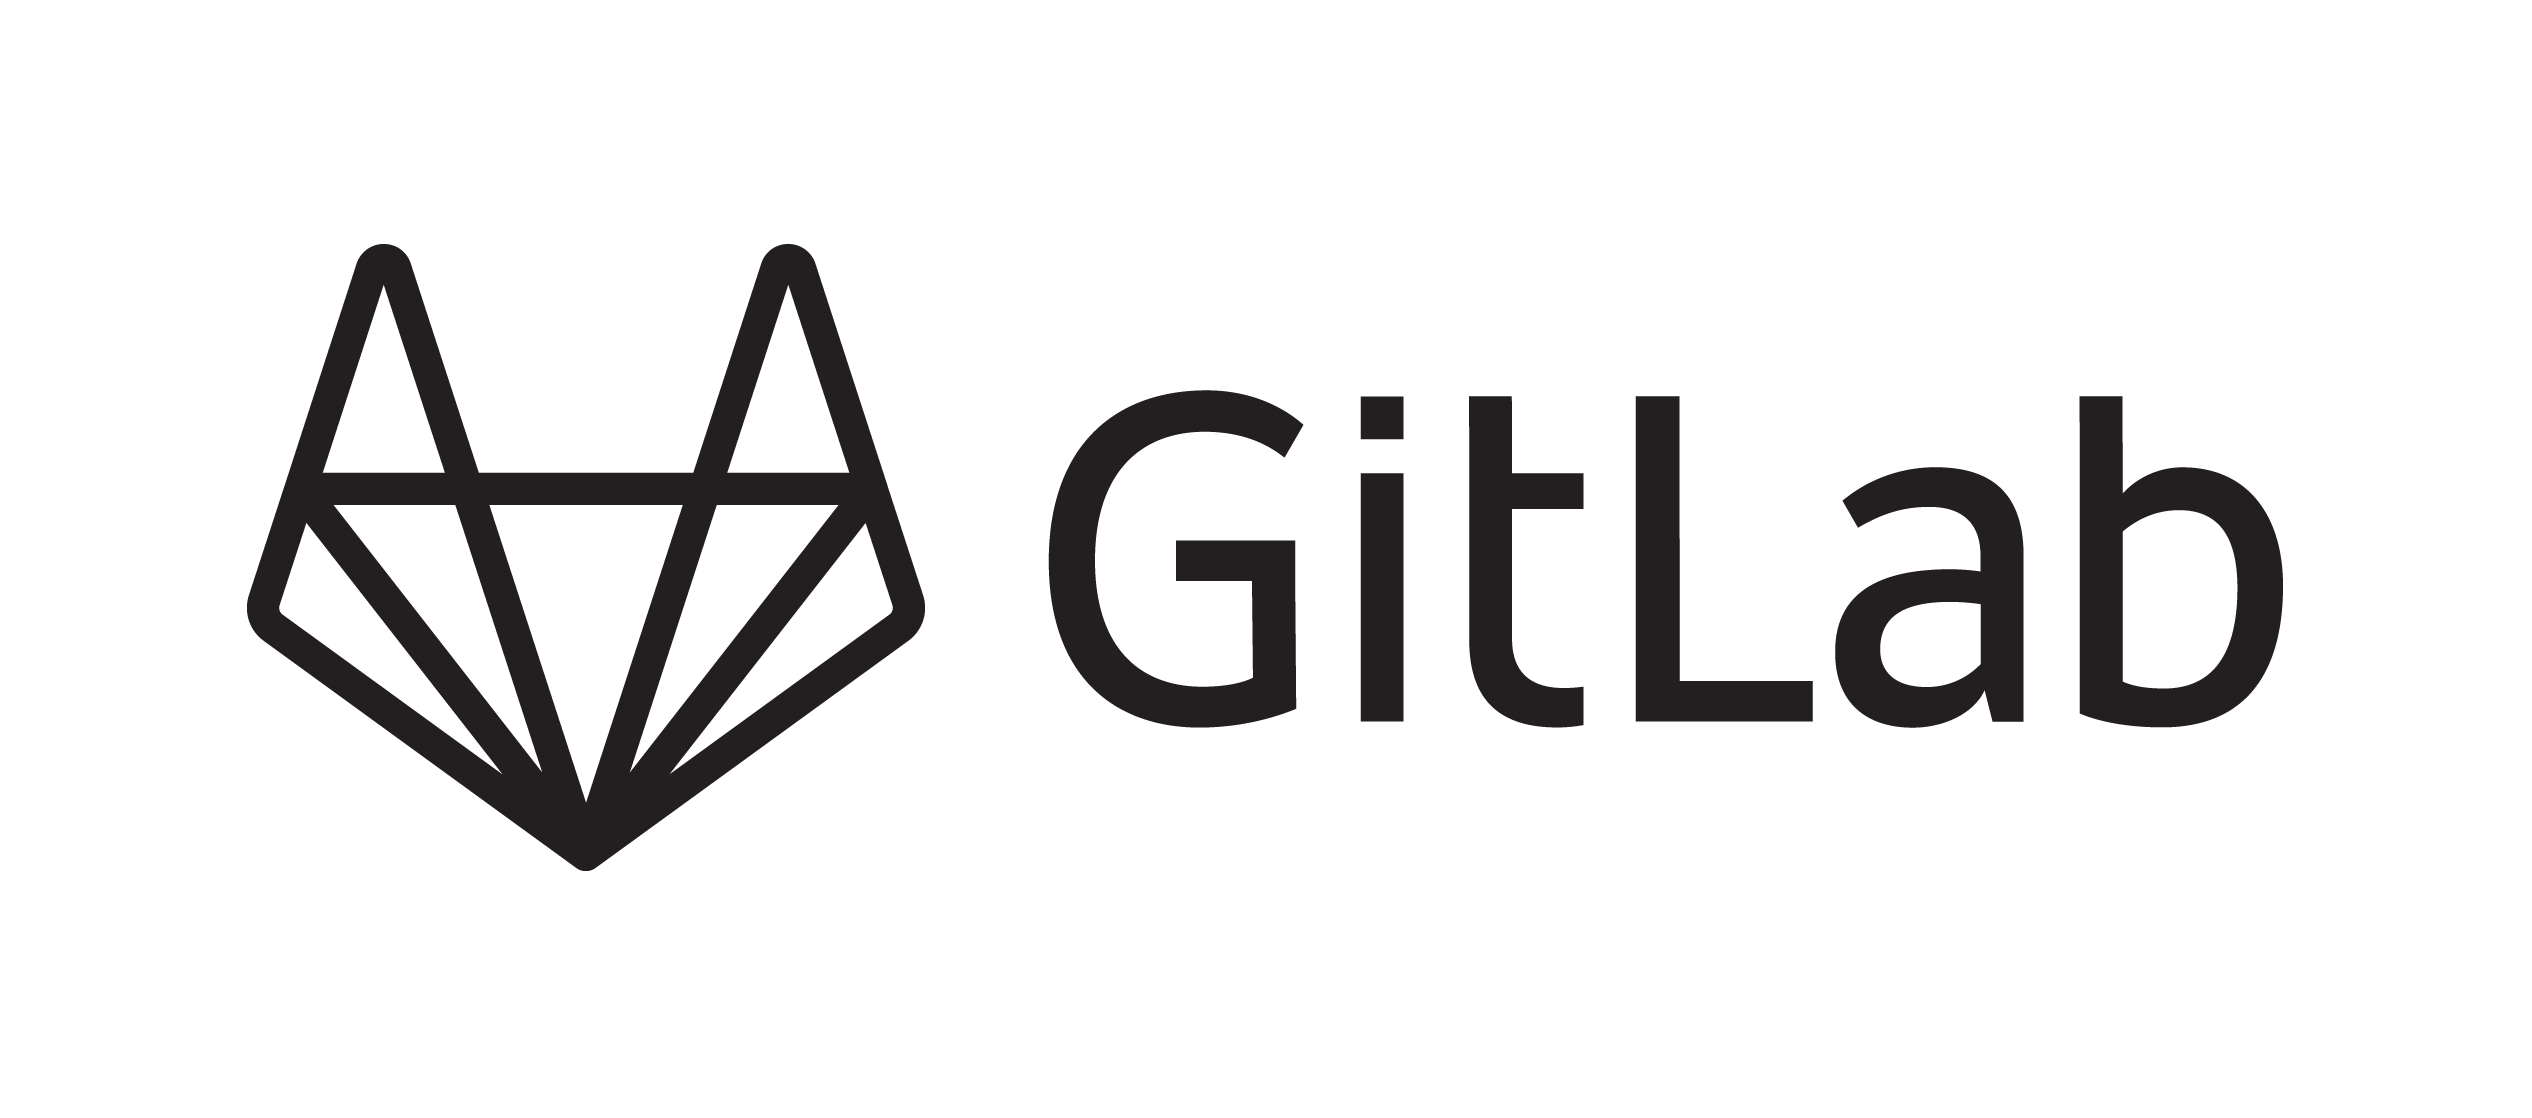 Press Kit | Gitlab